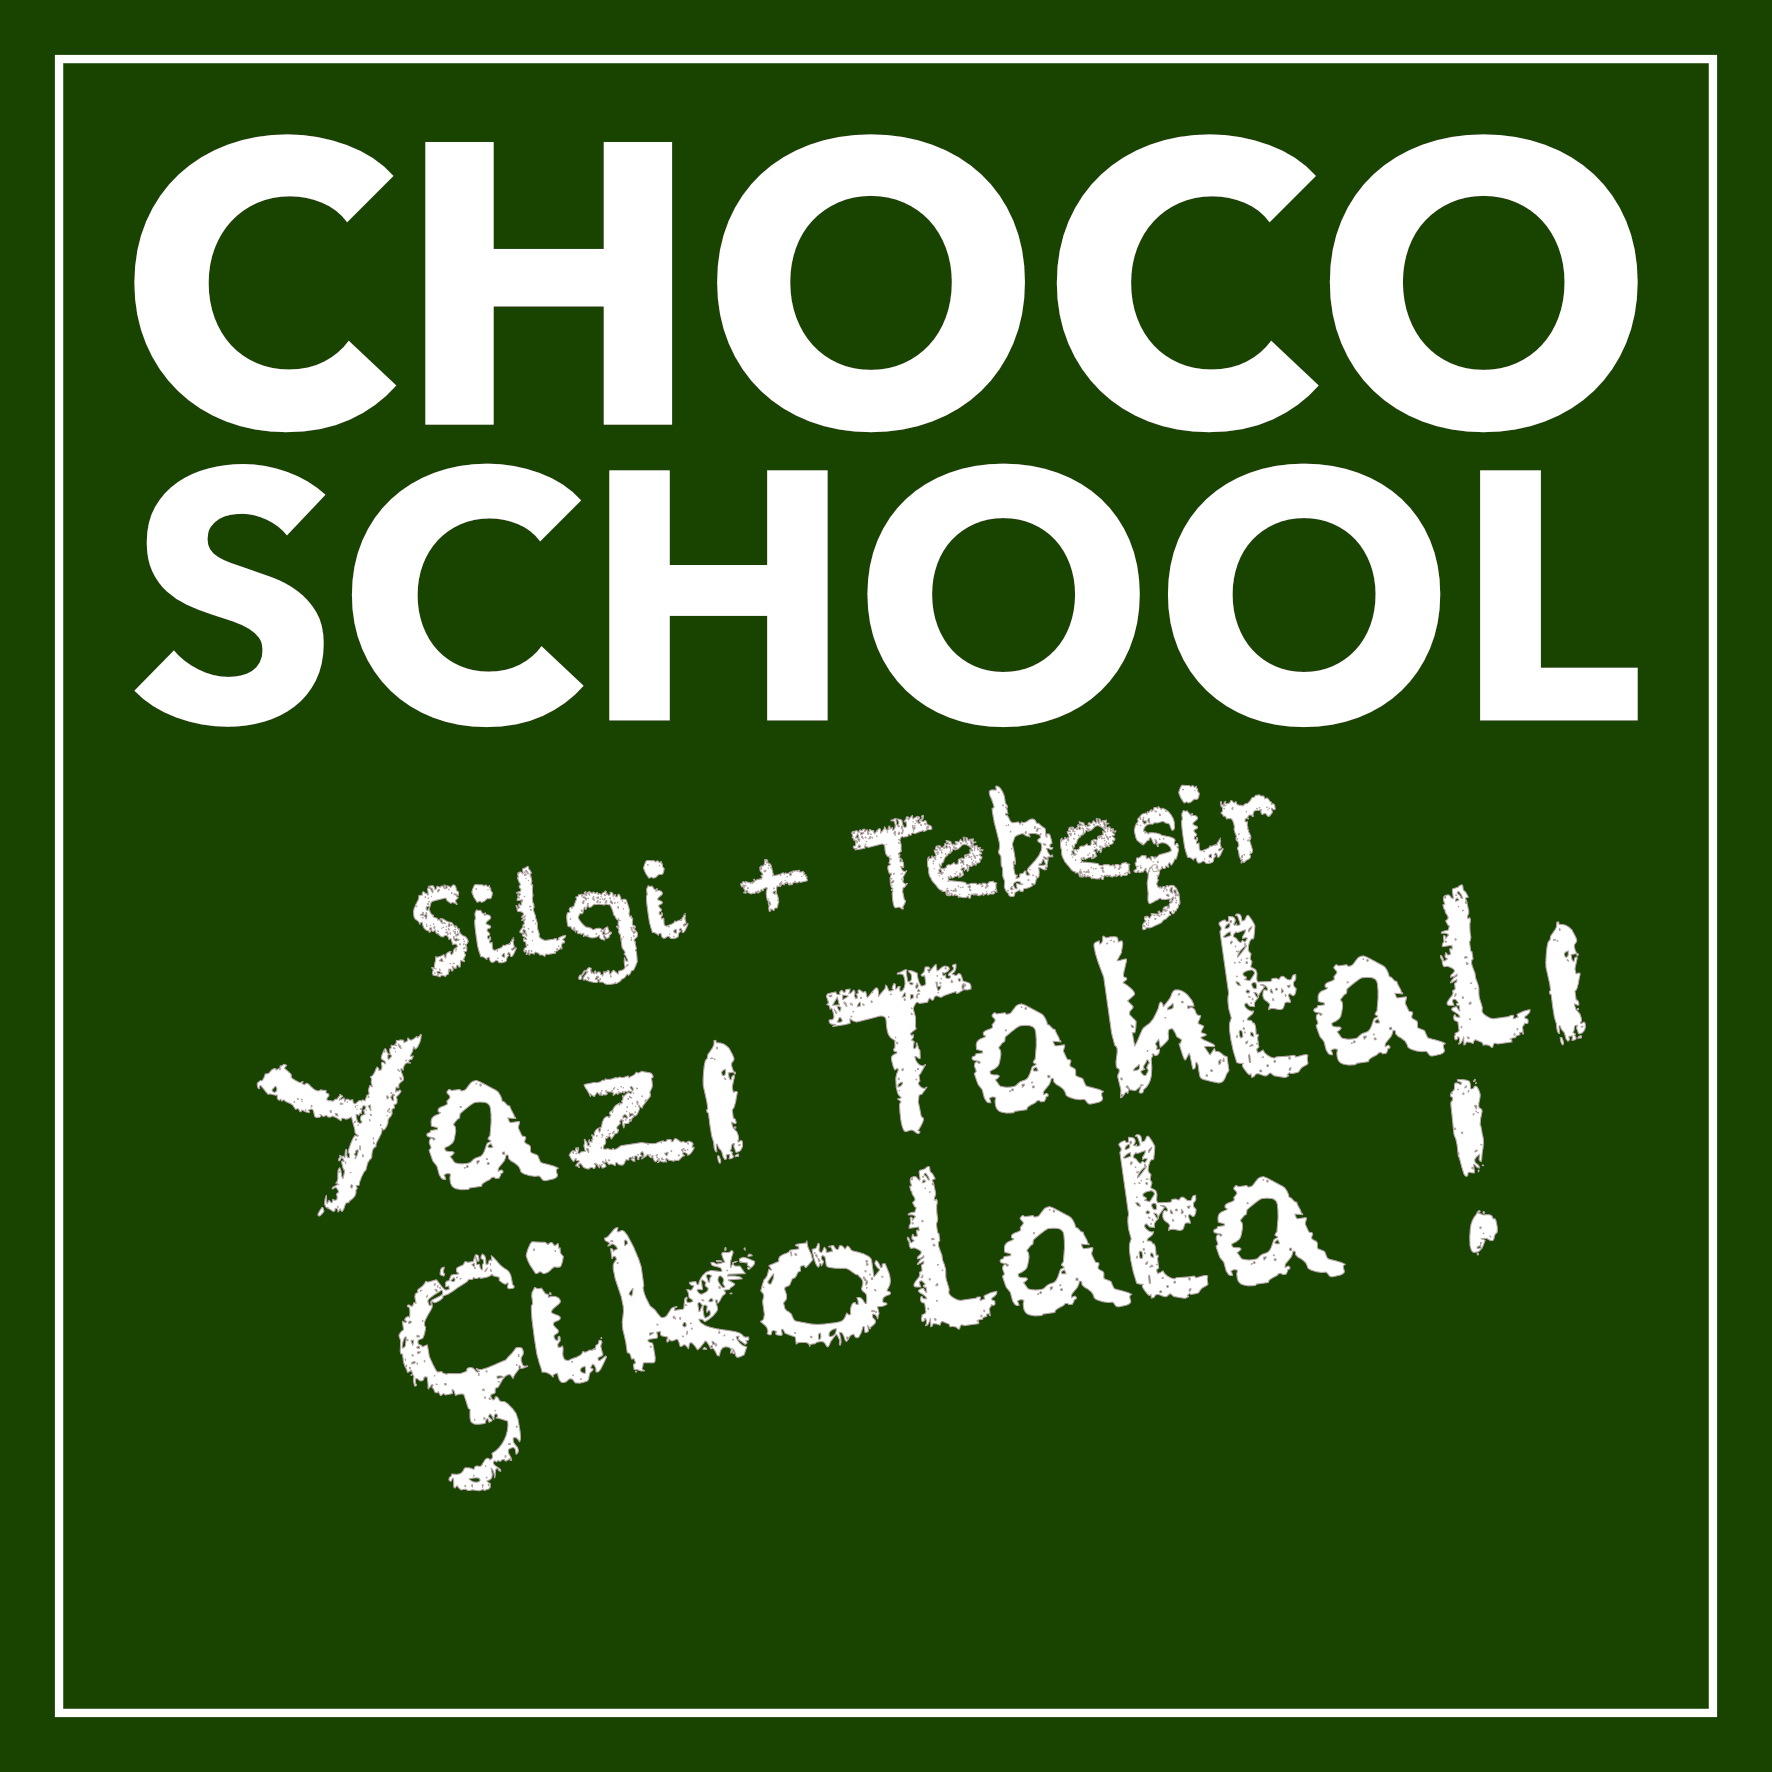 Choco School 